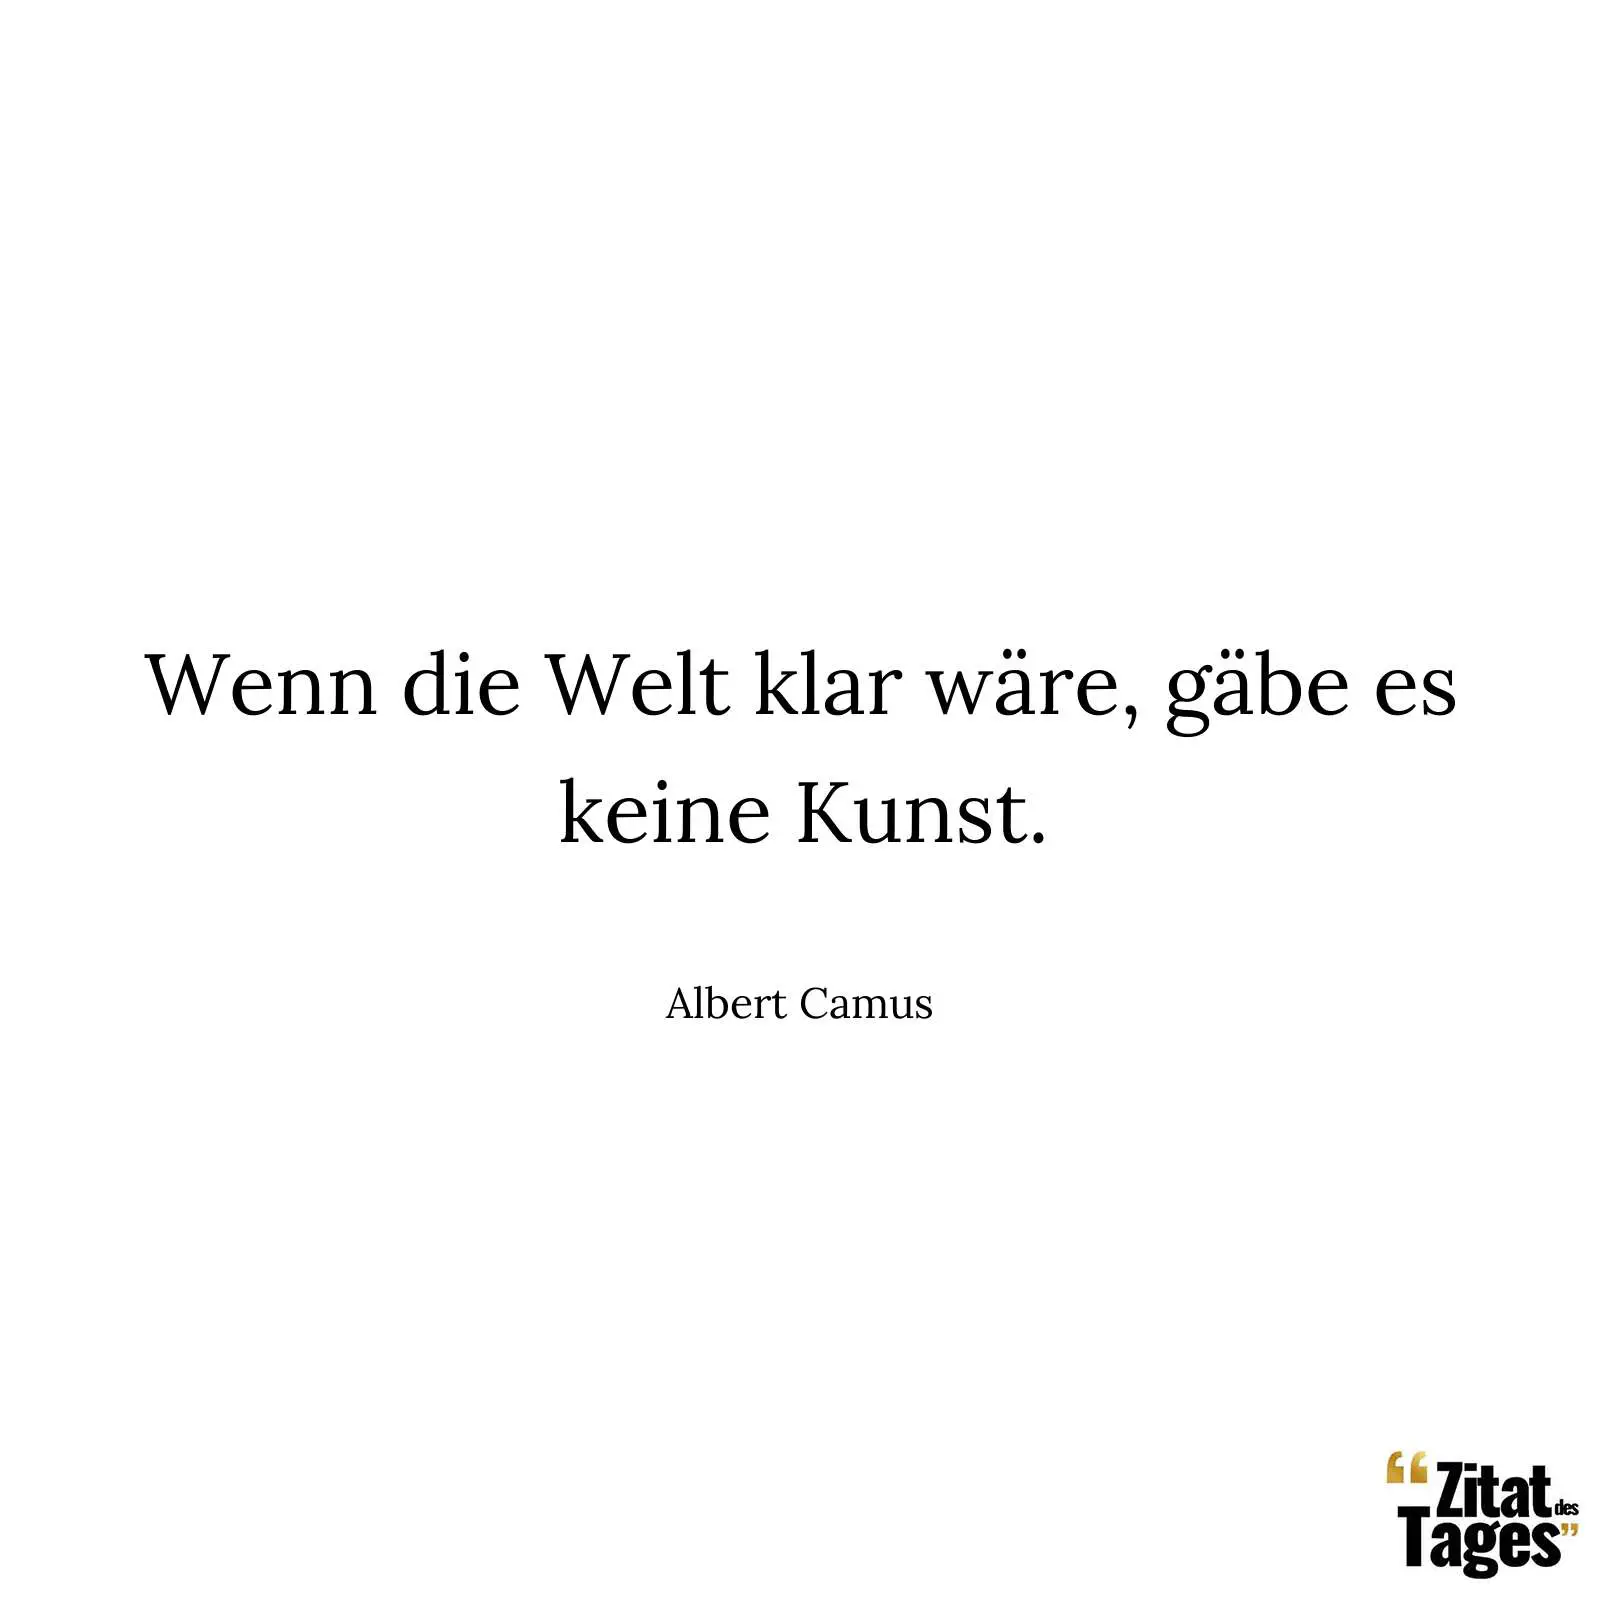 Wenn die Welt klar wäre, gäbe es keine Kunst. - Albert Camus